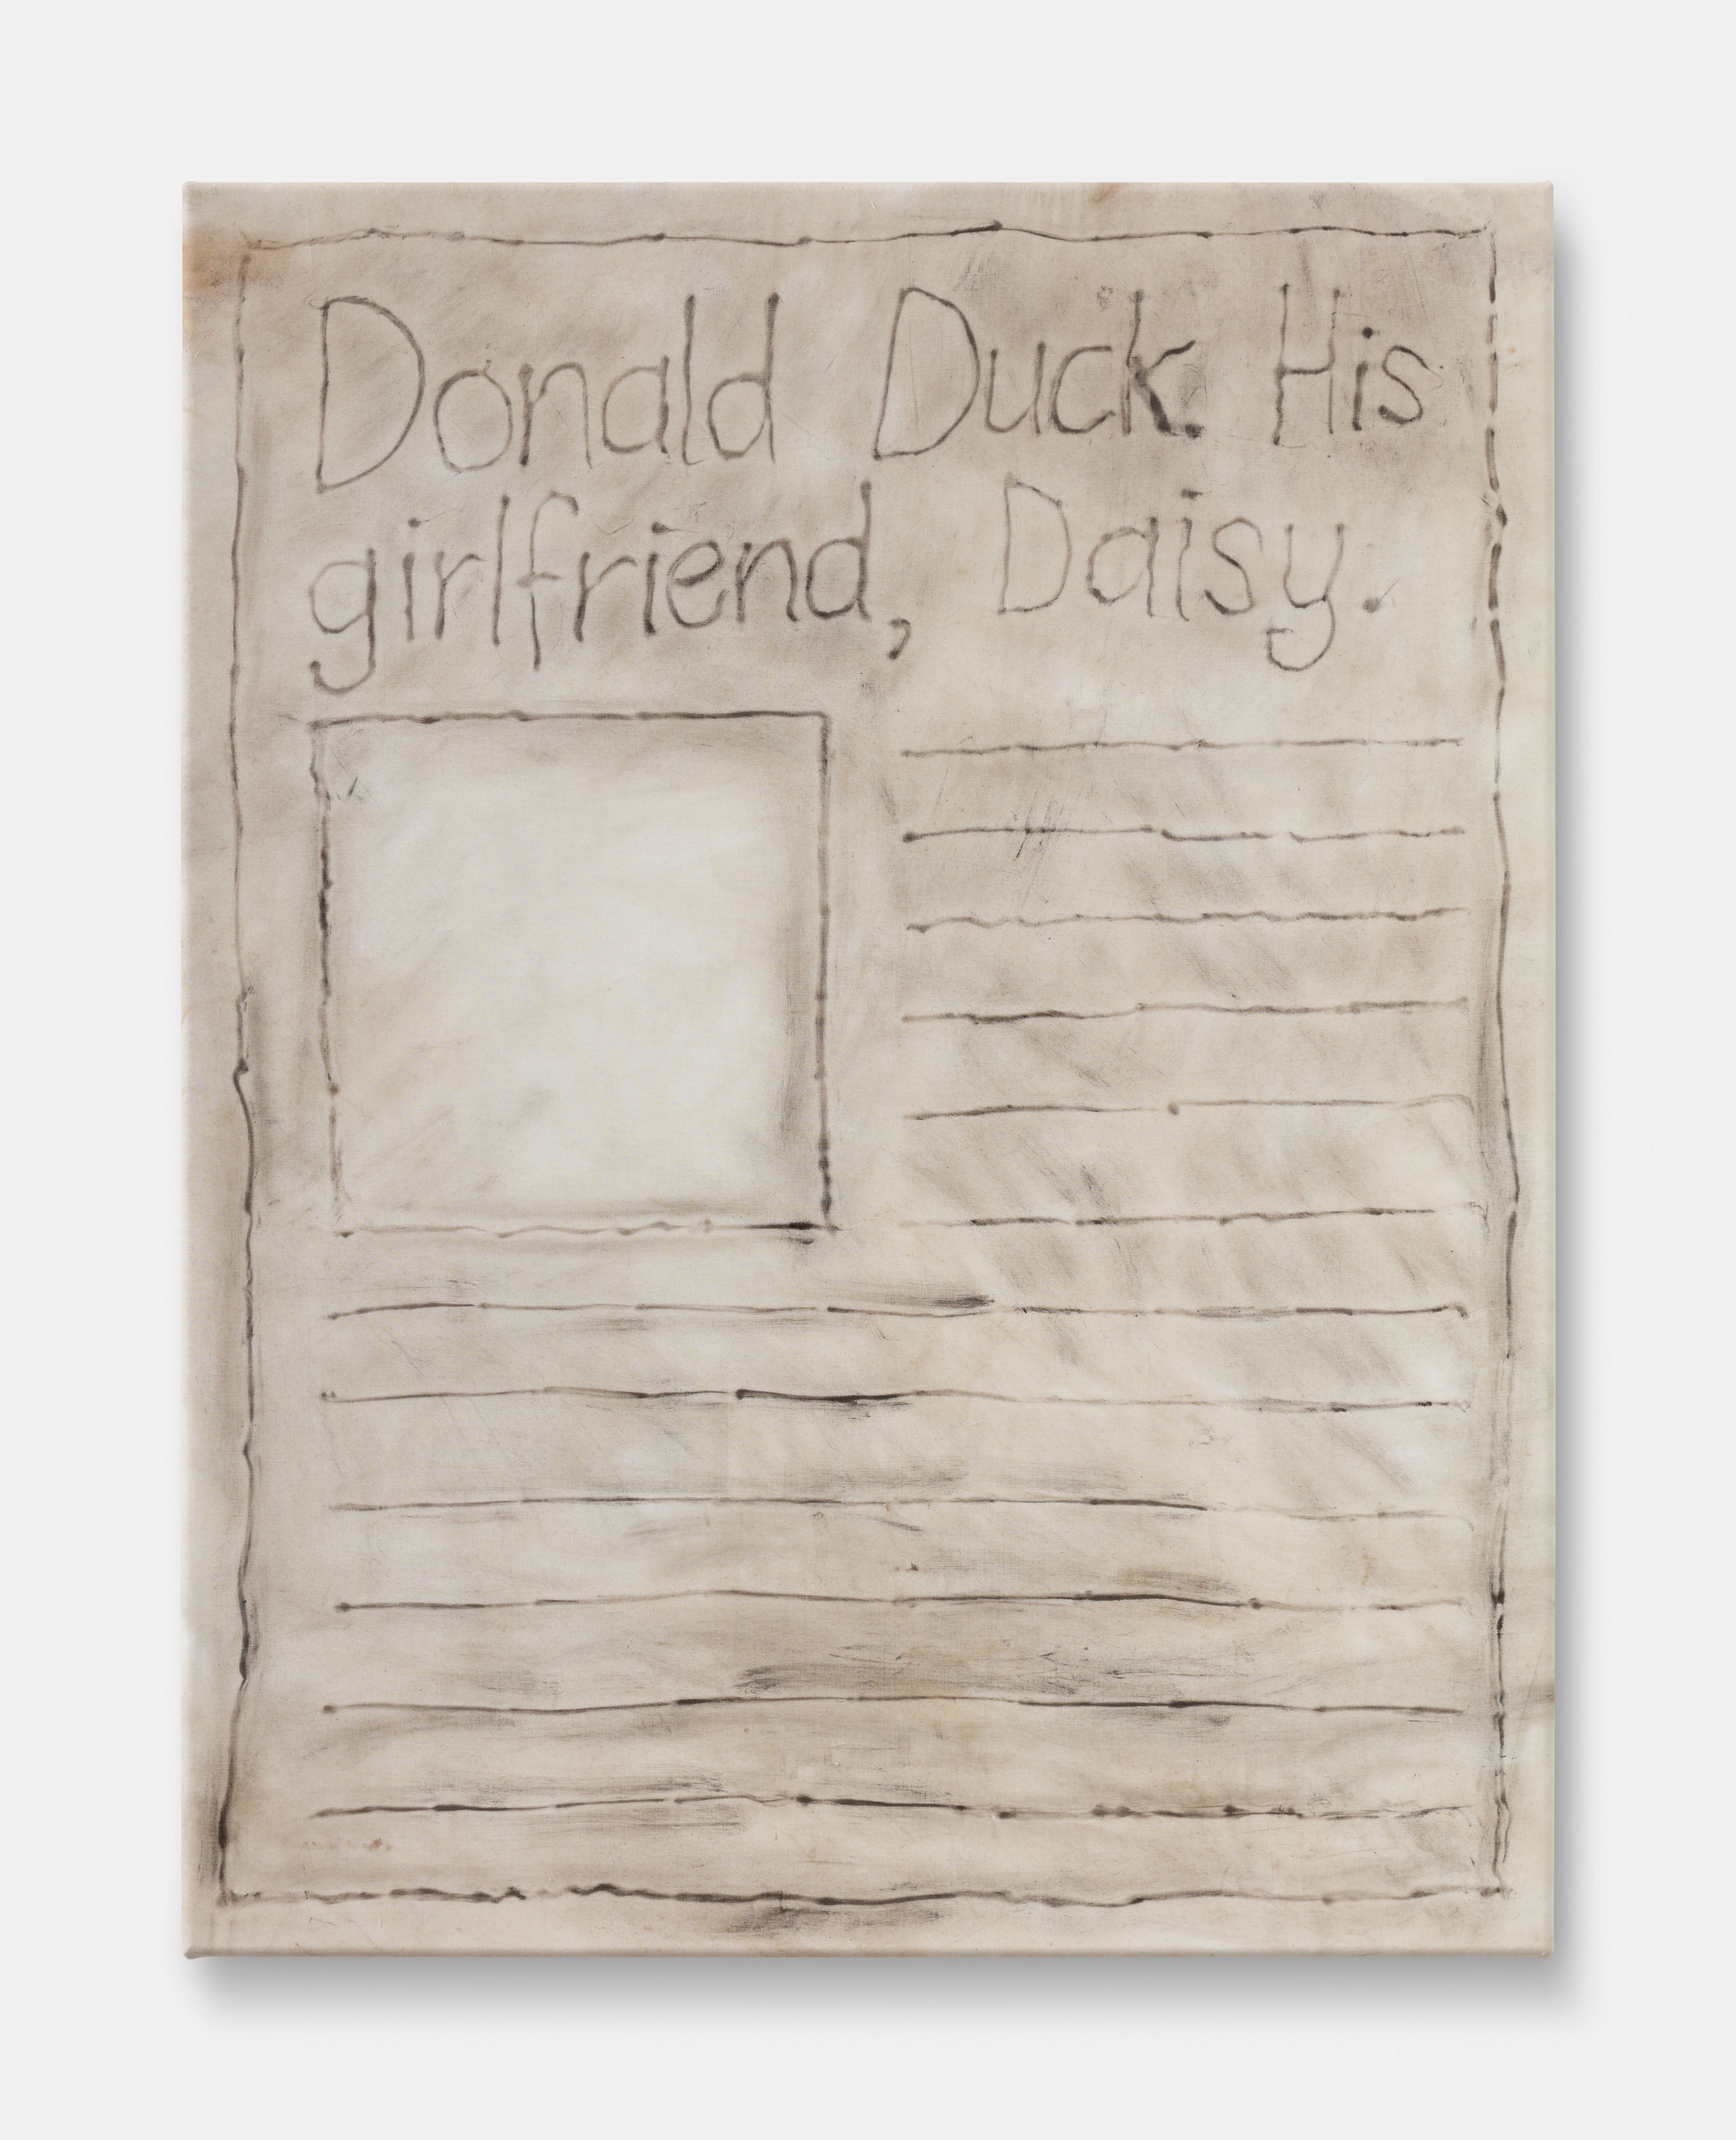 Alex Vivian, Newspaper headline (Donald Duck. His girlfriend, Daisy), 2016